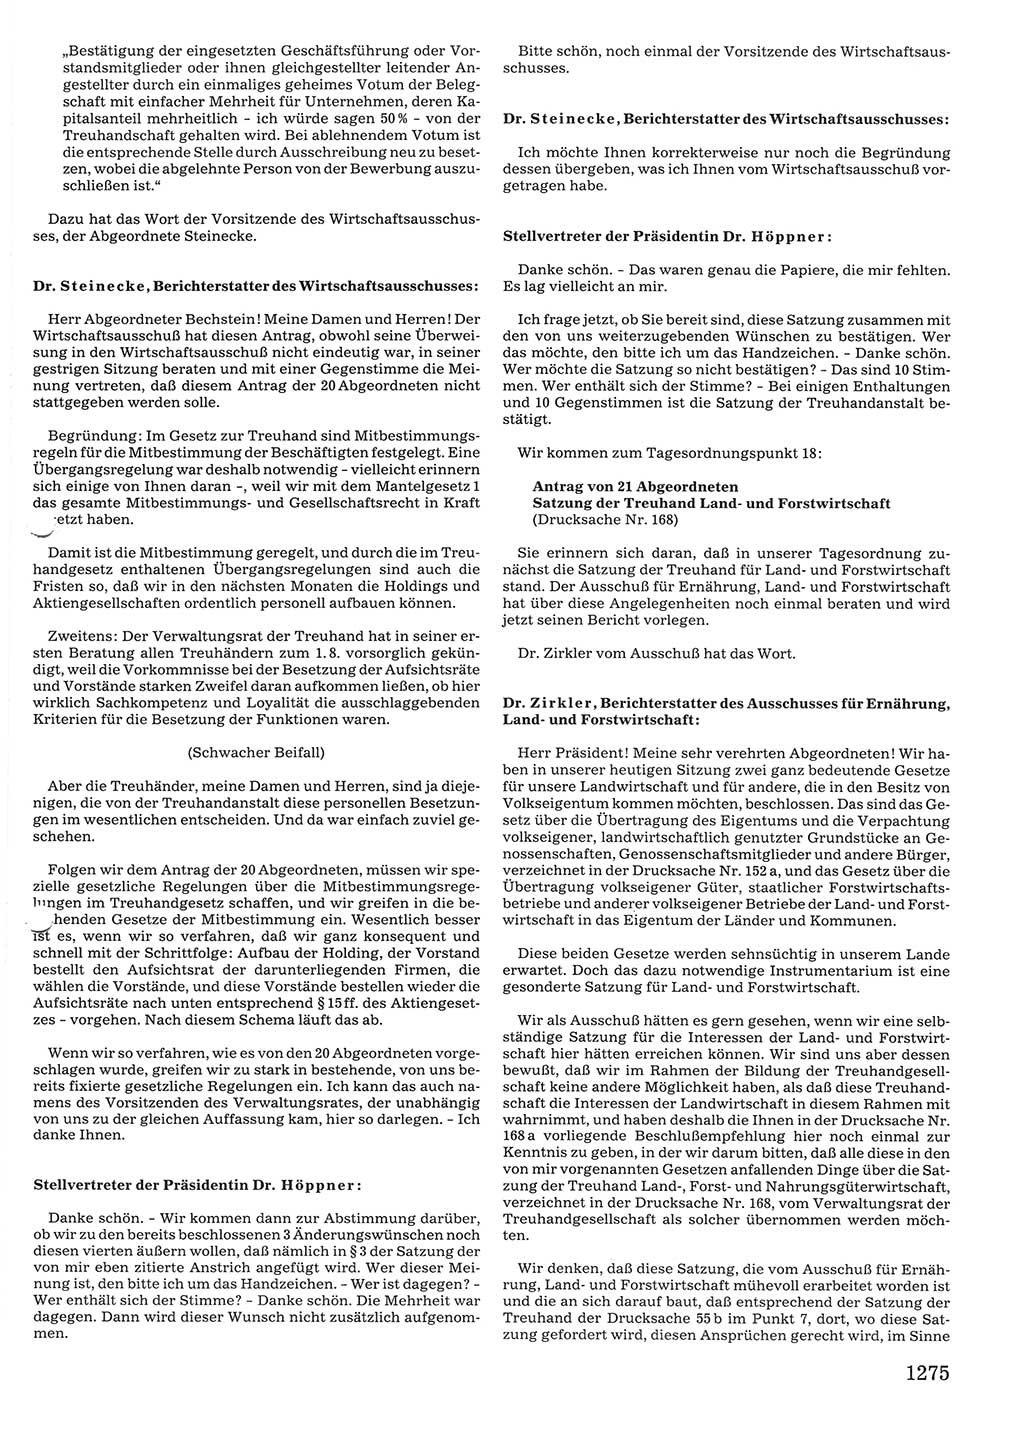 Tagungen der Volkskammer (VK) der Deutschen Demokratischen Republik (DDR), 10. Wahlperiode 1990, Seite 1275 (VK. DDR 10. WP. 1990, Prot. Tg. 1-38, 5.4.-2.10.1990, S. 1275)